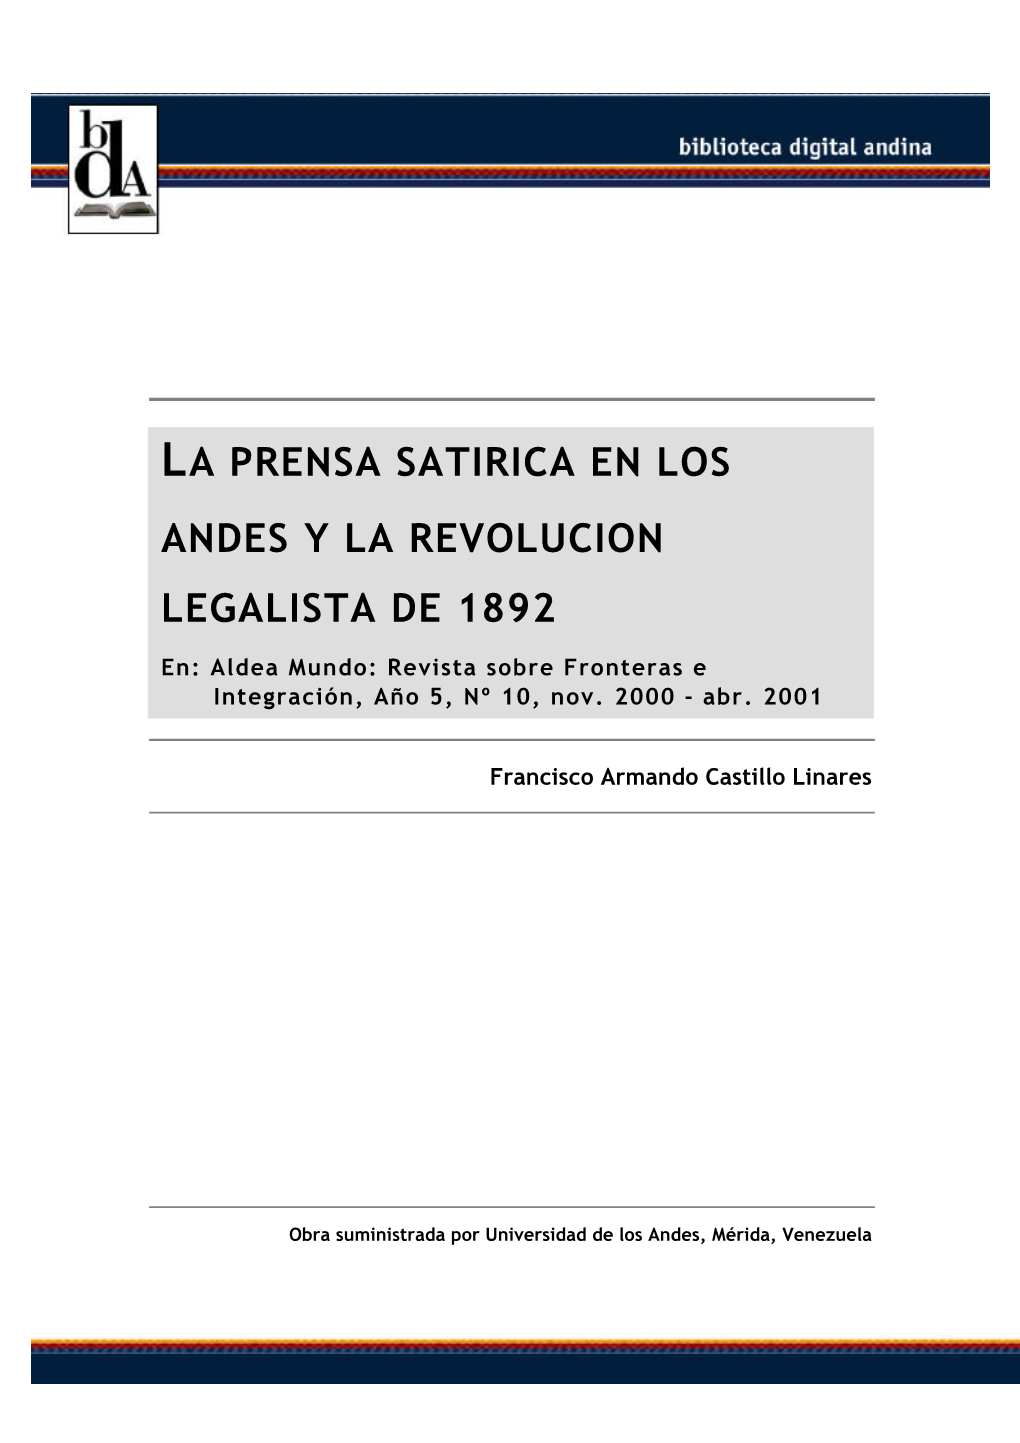 La Prensa Satirica En Los Andes Y La Revolucion